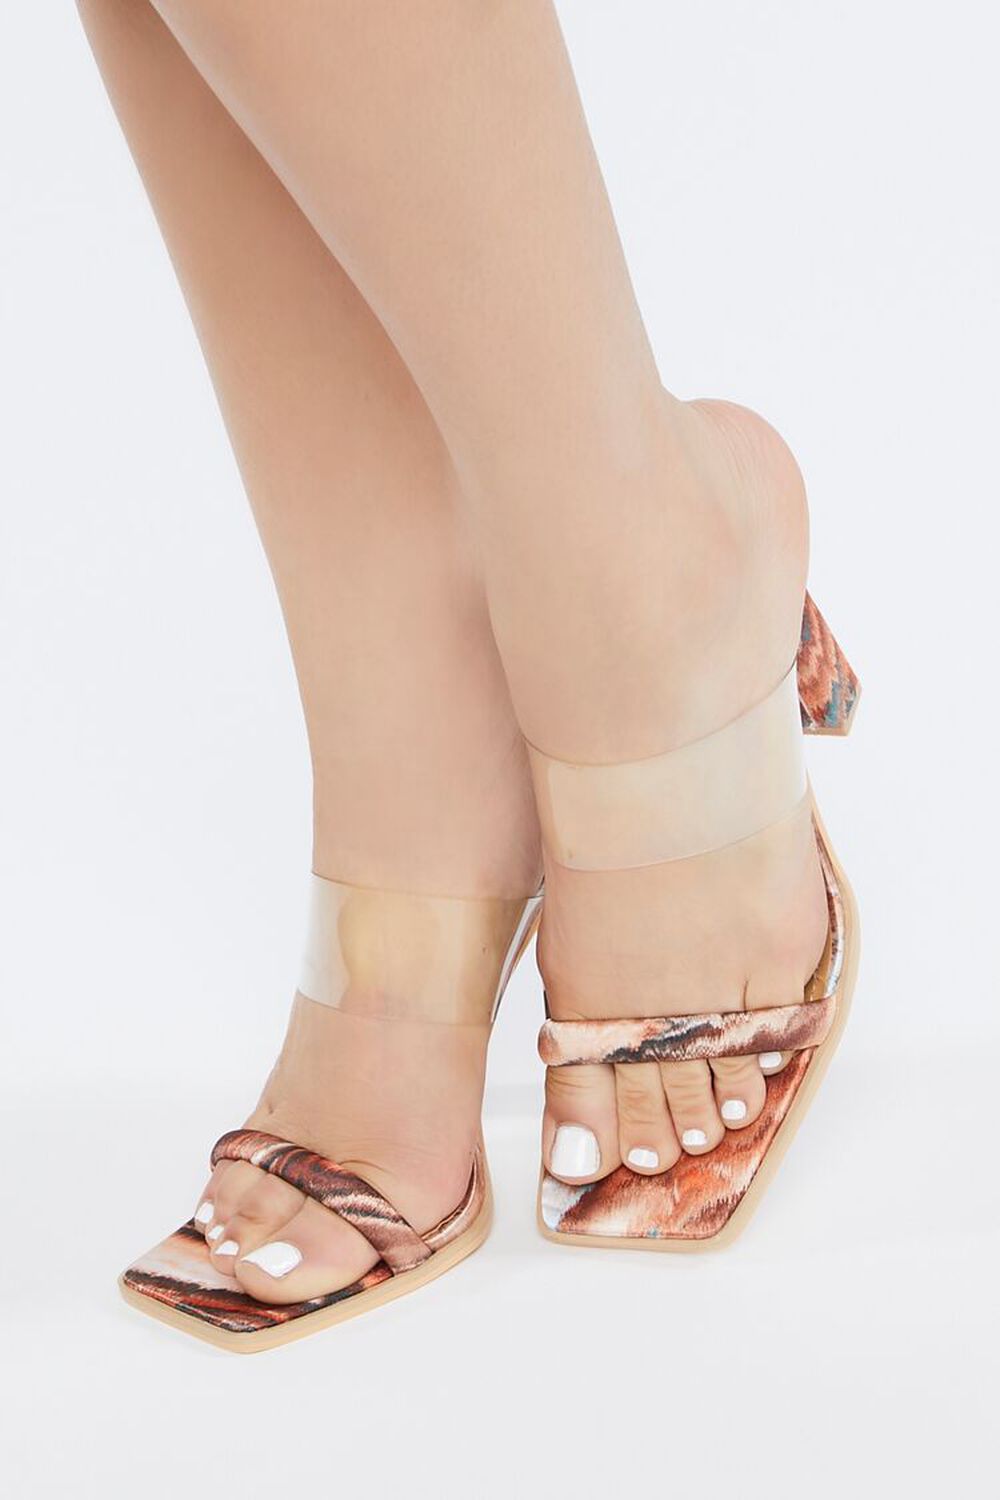 BROWN/MULTI Marble Print Open-Toe Block Heels, image 1